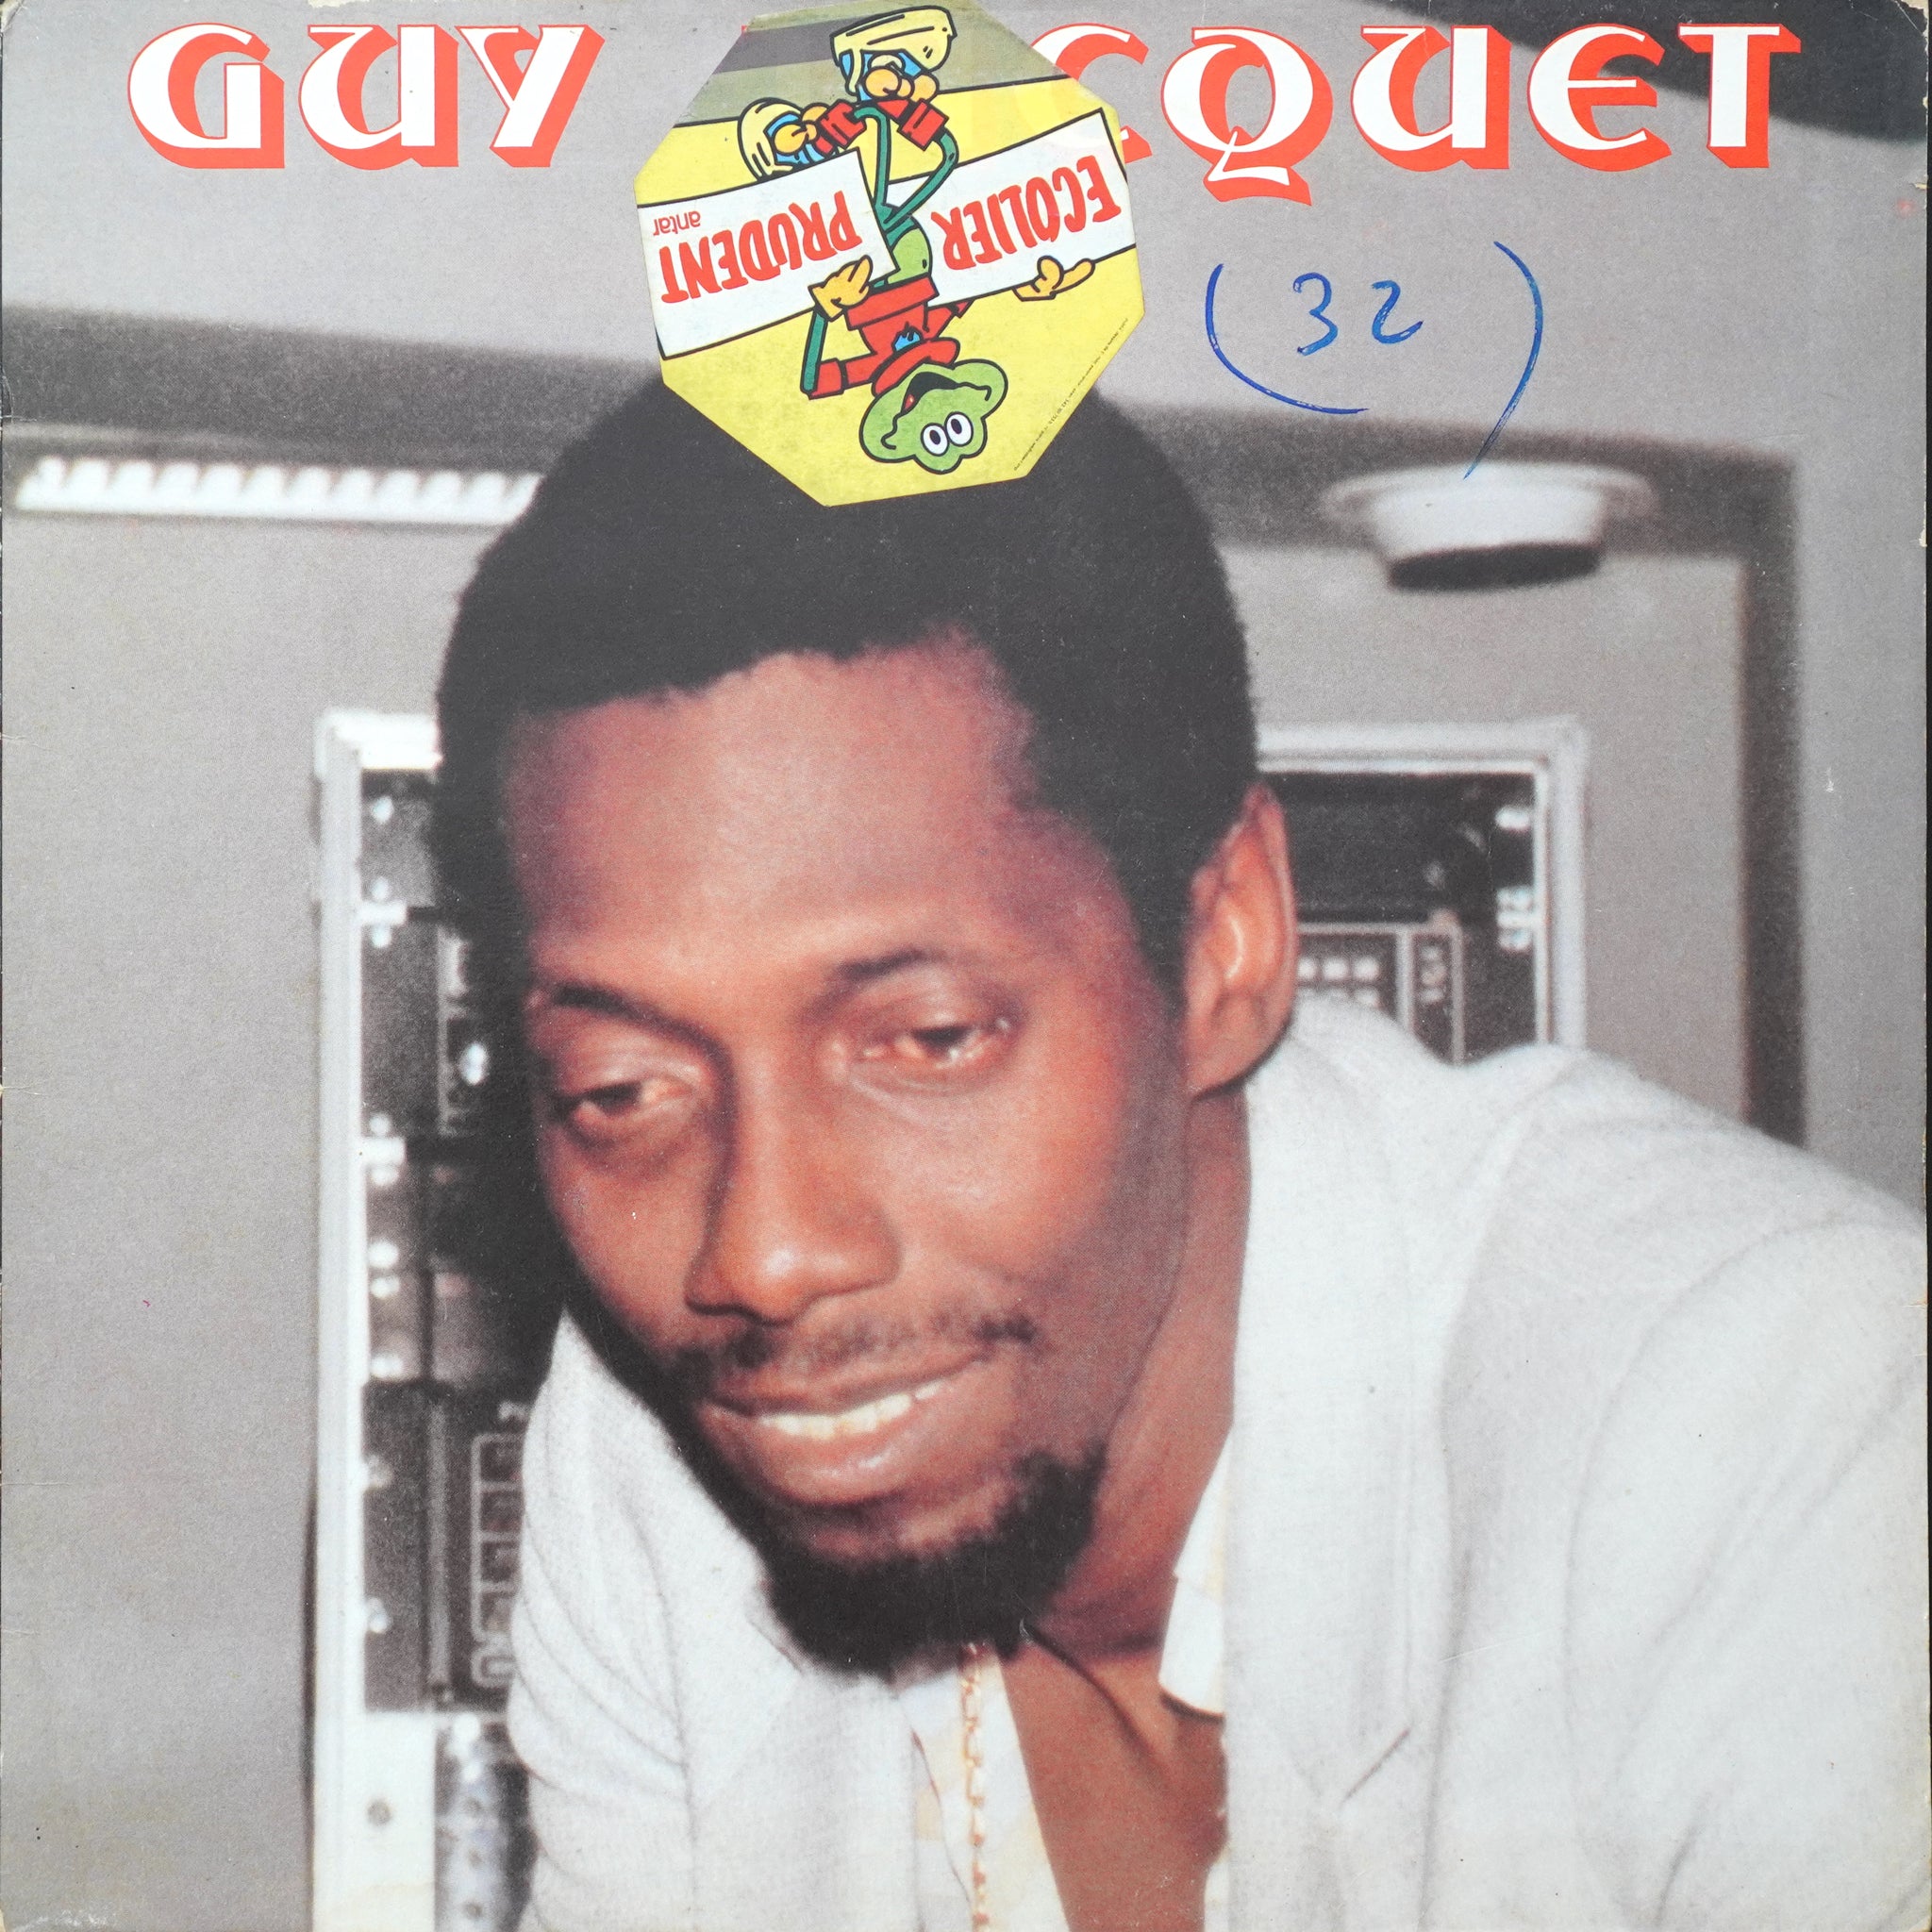 Guy Jacquet - S/T (LP)